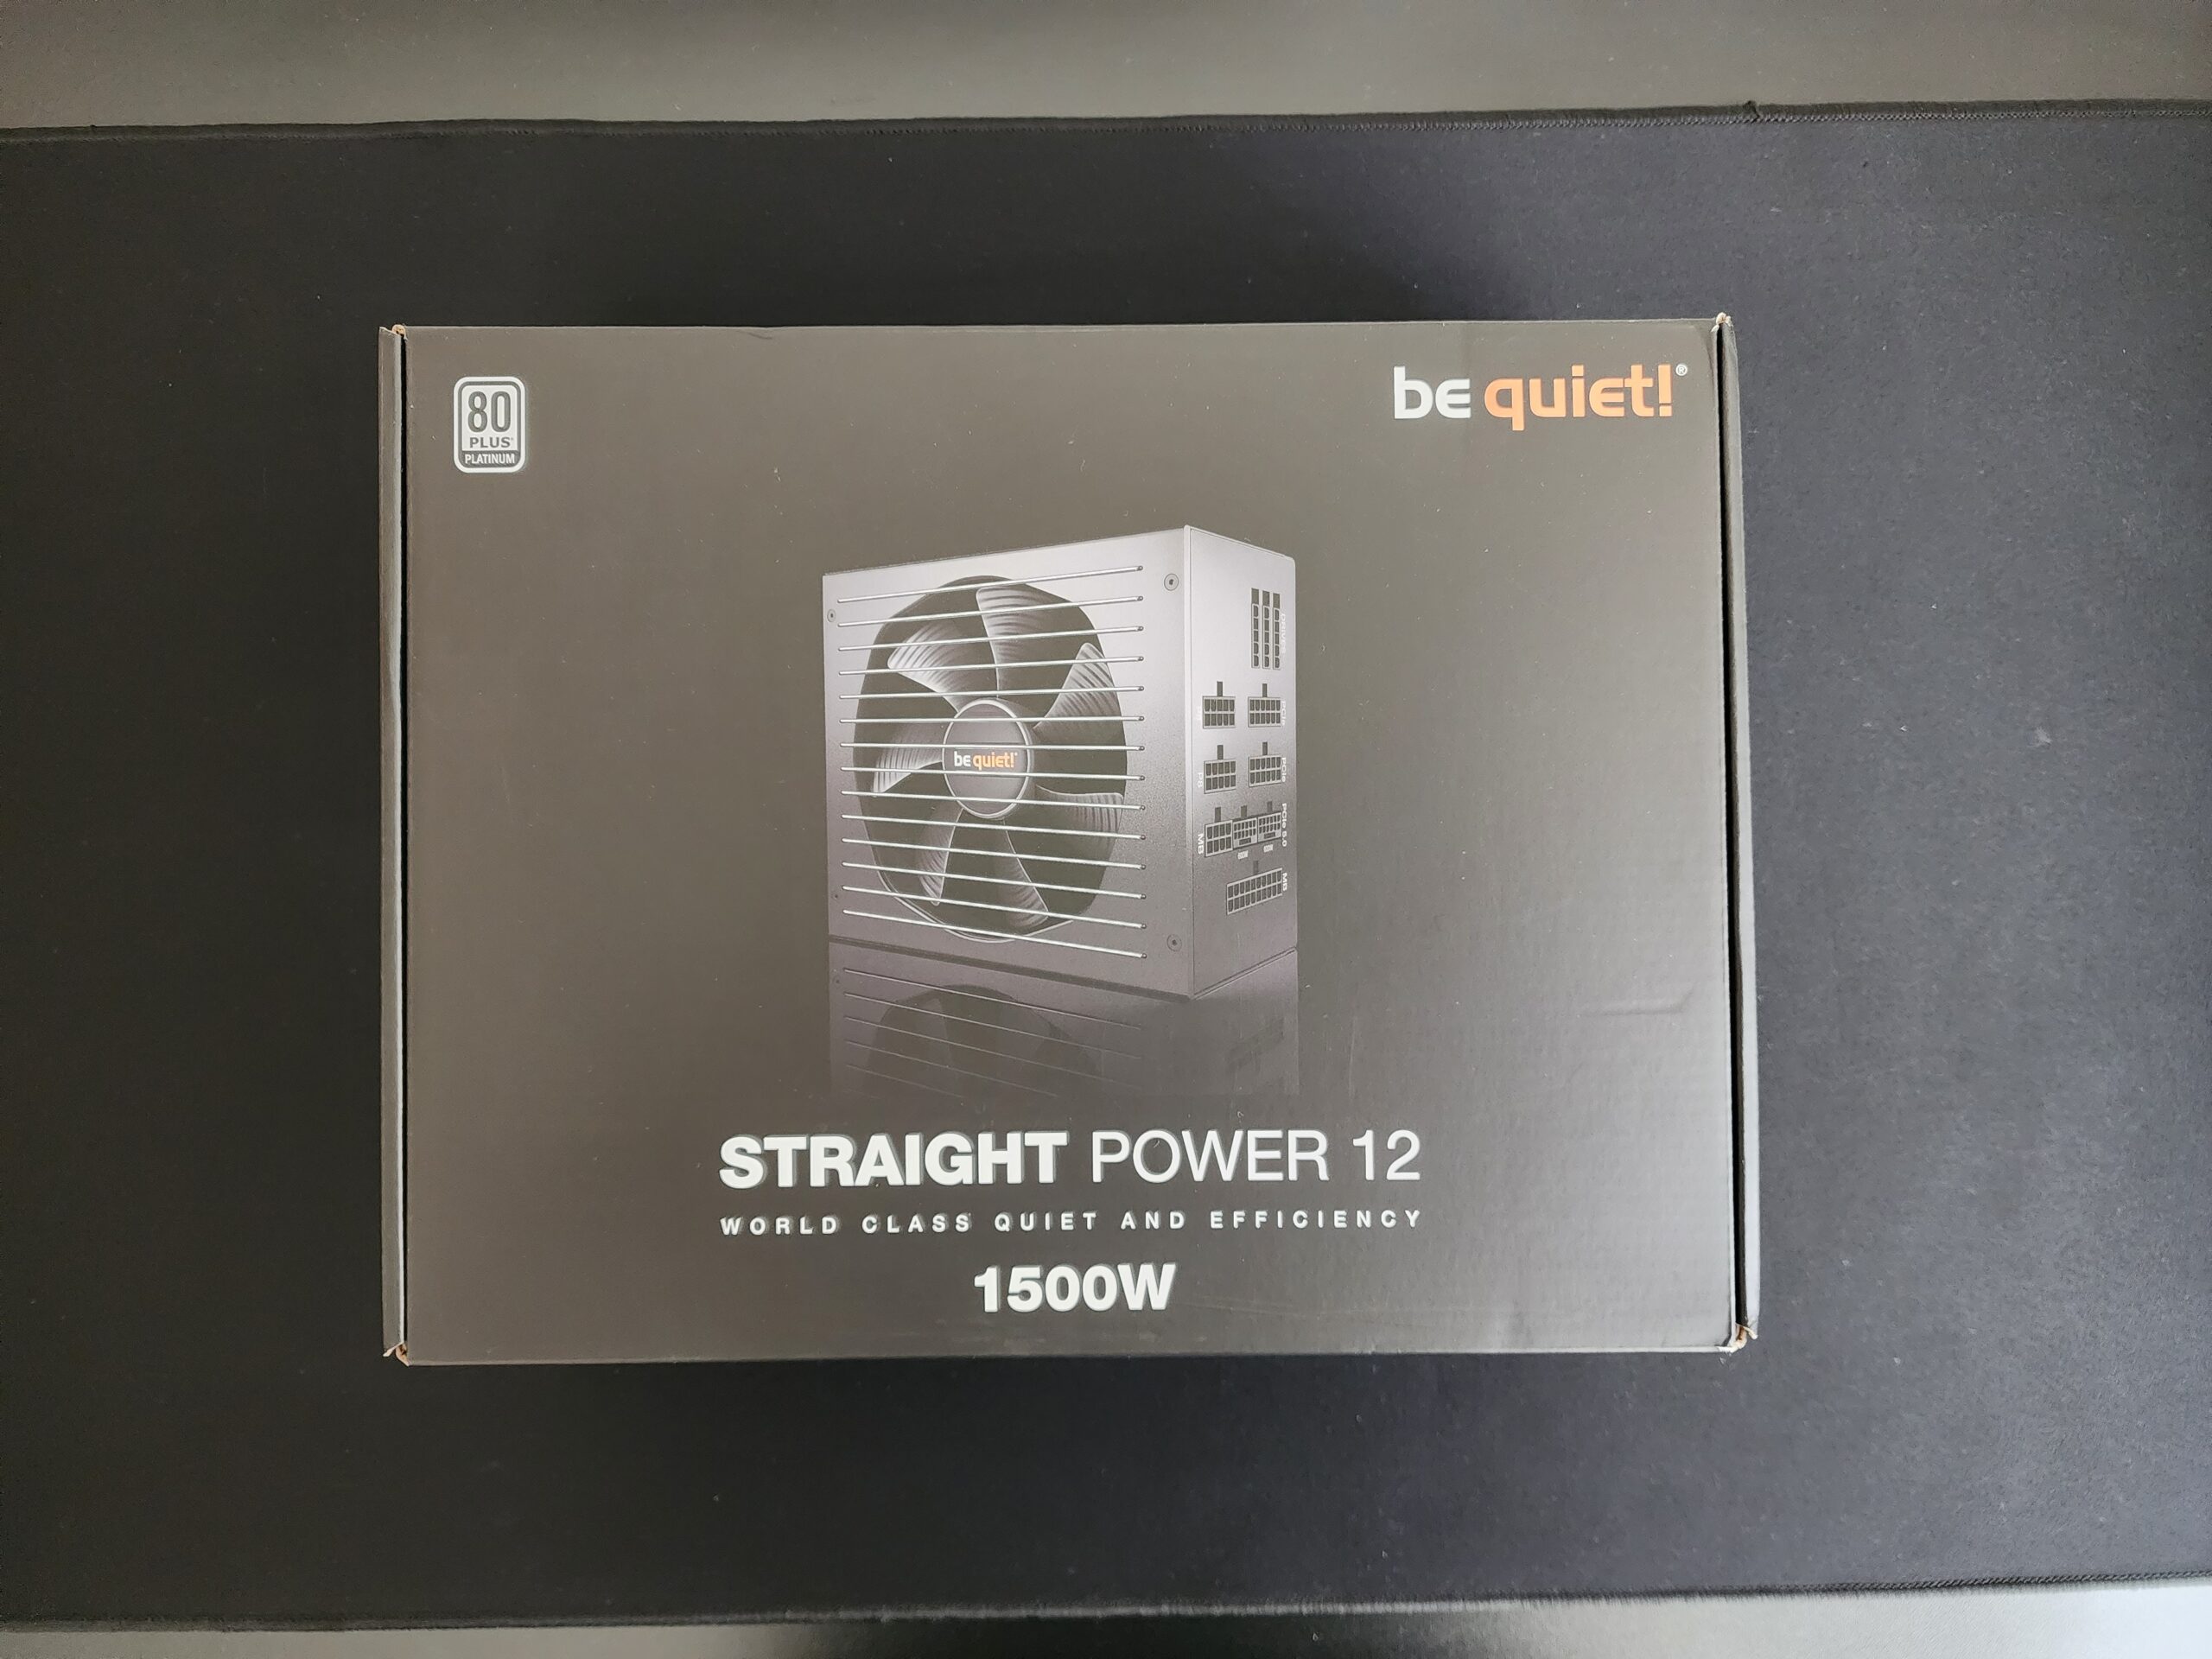 be quiet! Straight Power 11 Power Supply 750 Watt review